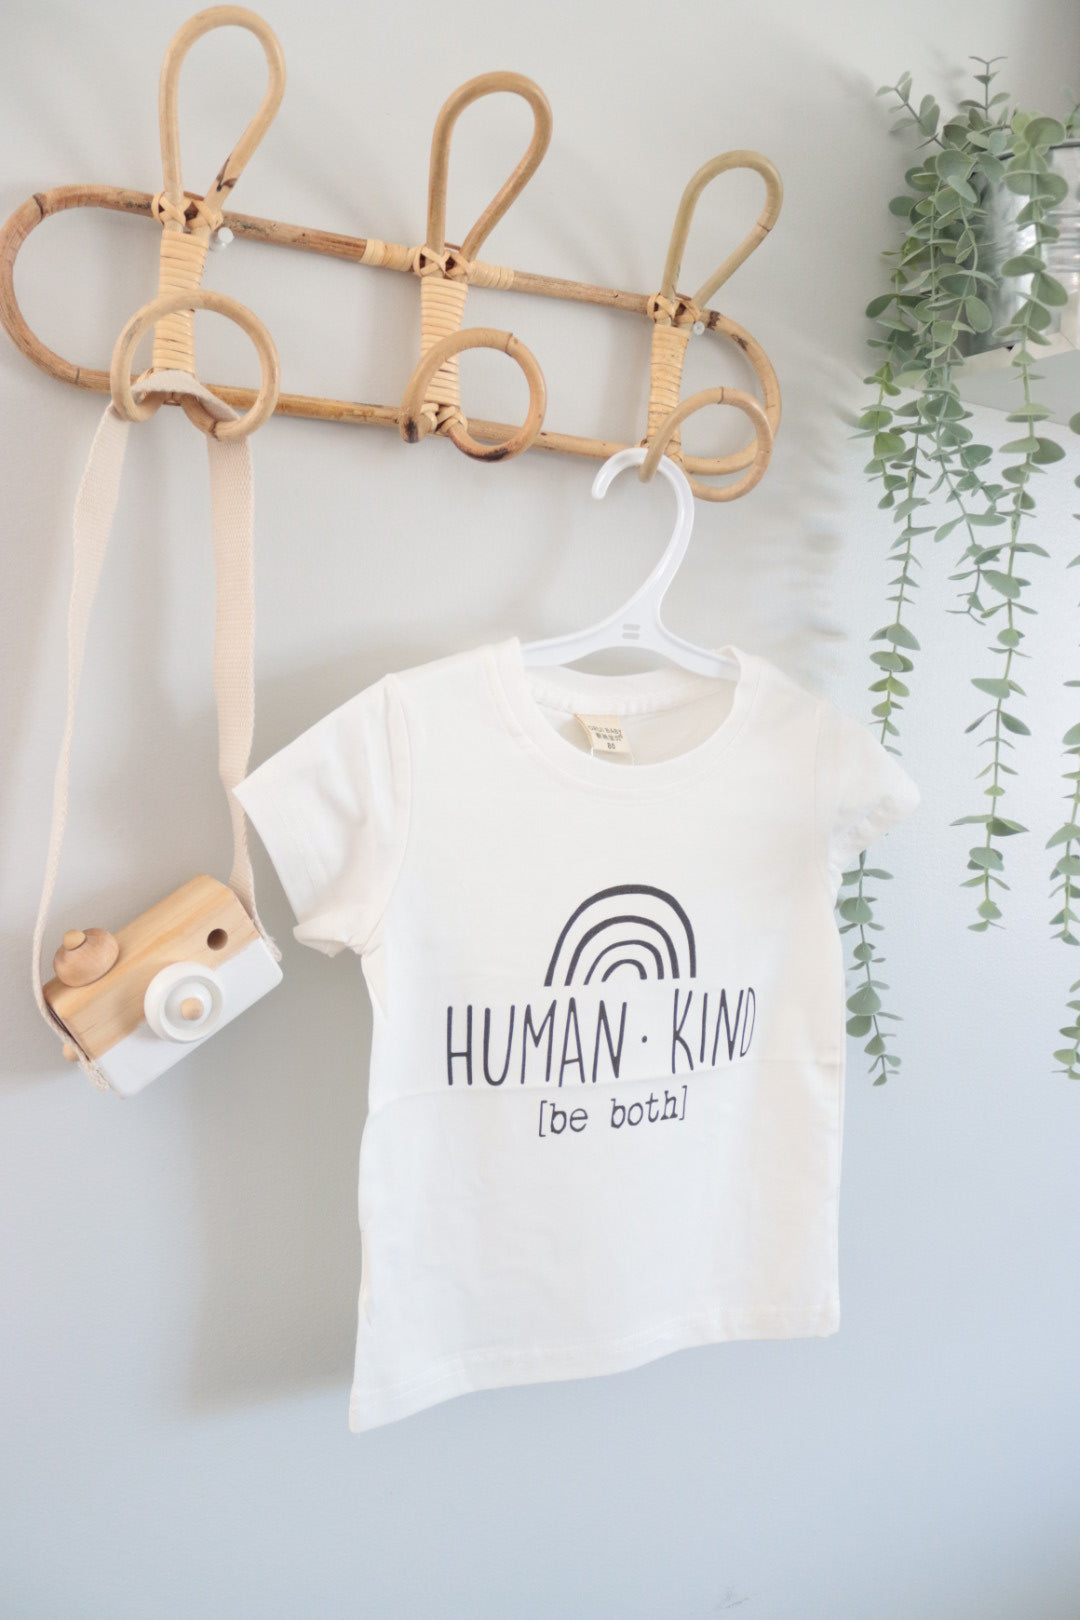 Human-Kind Tee-Shirt